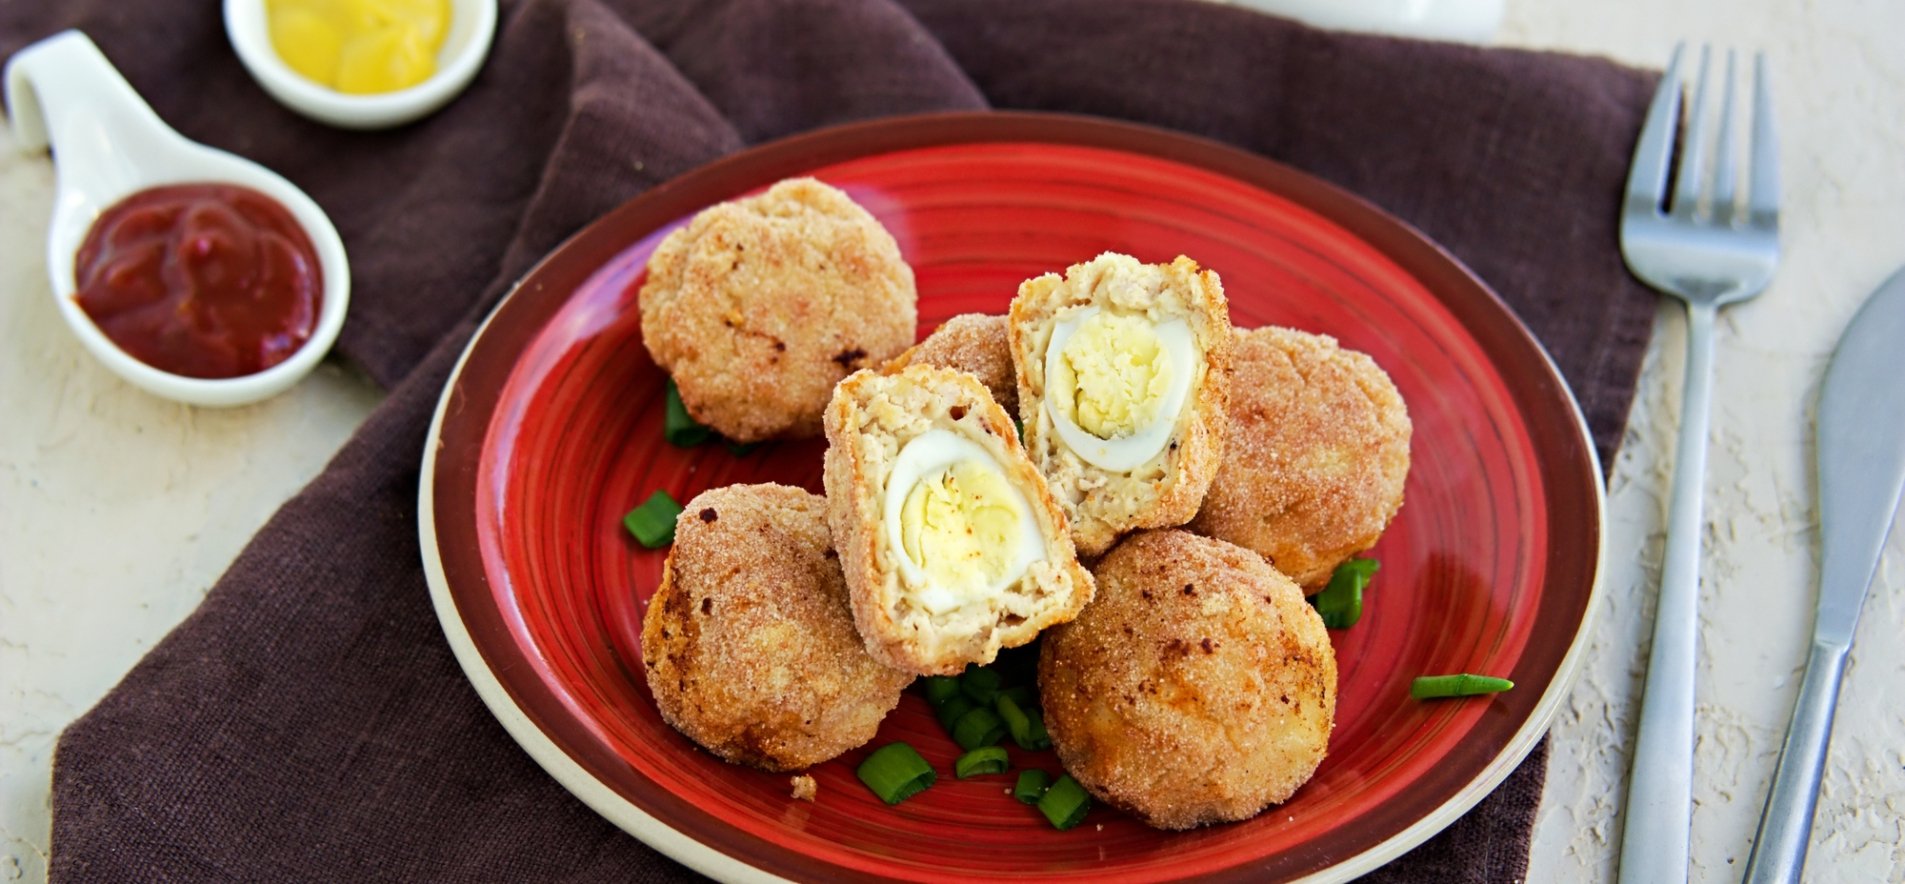 Закуска - перепелиные яйца в мясном фарше | Рецепт | Национальная еда, Идеи для блюд, Фото еды